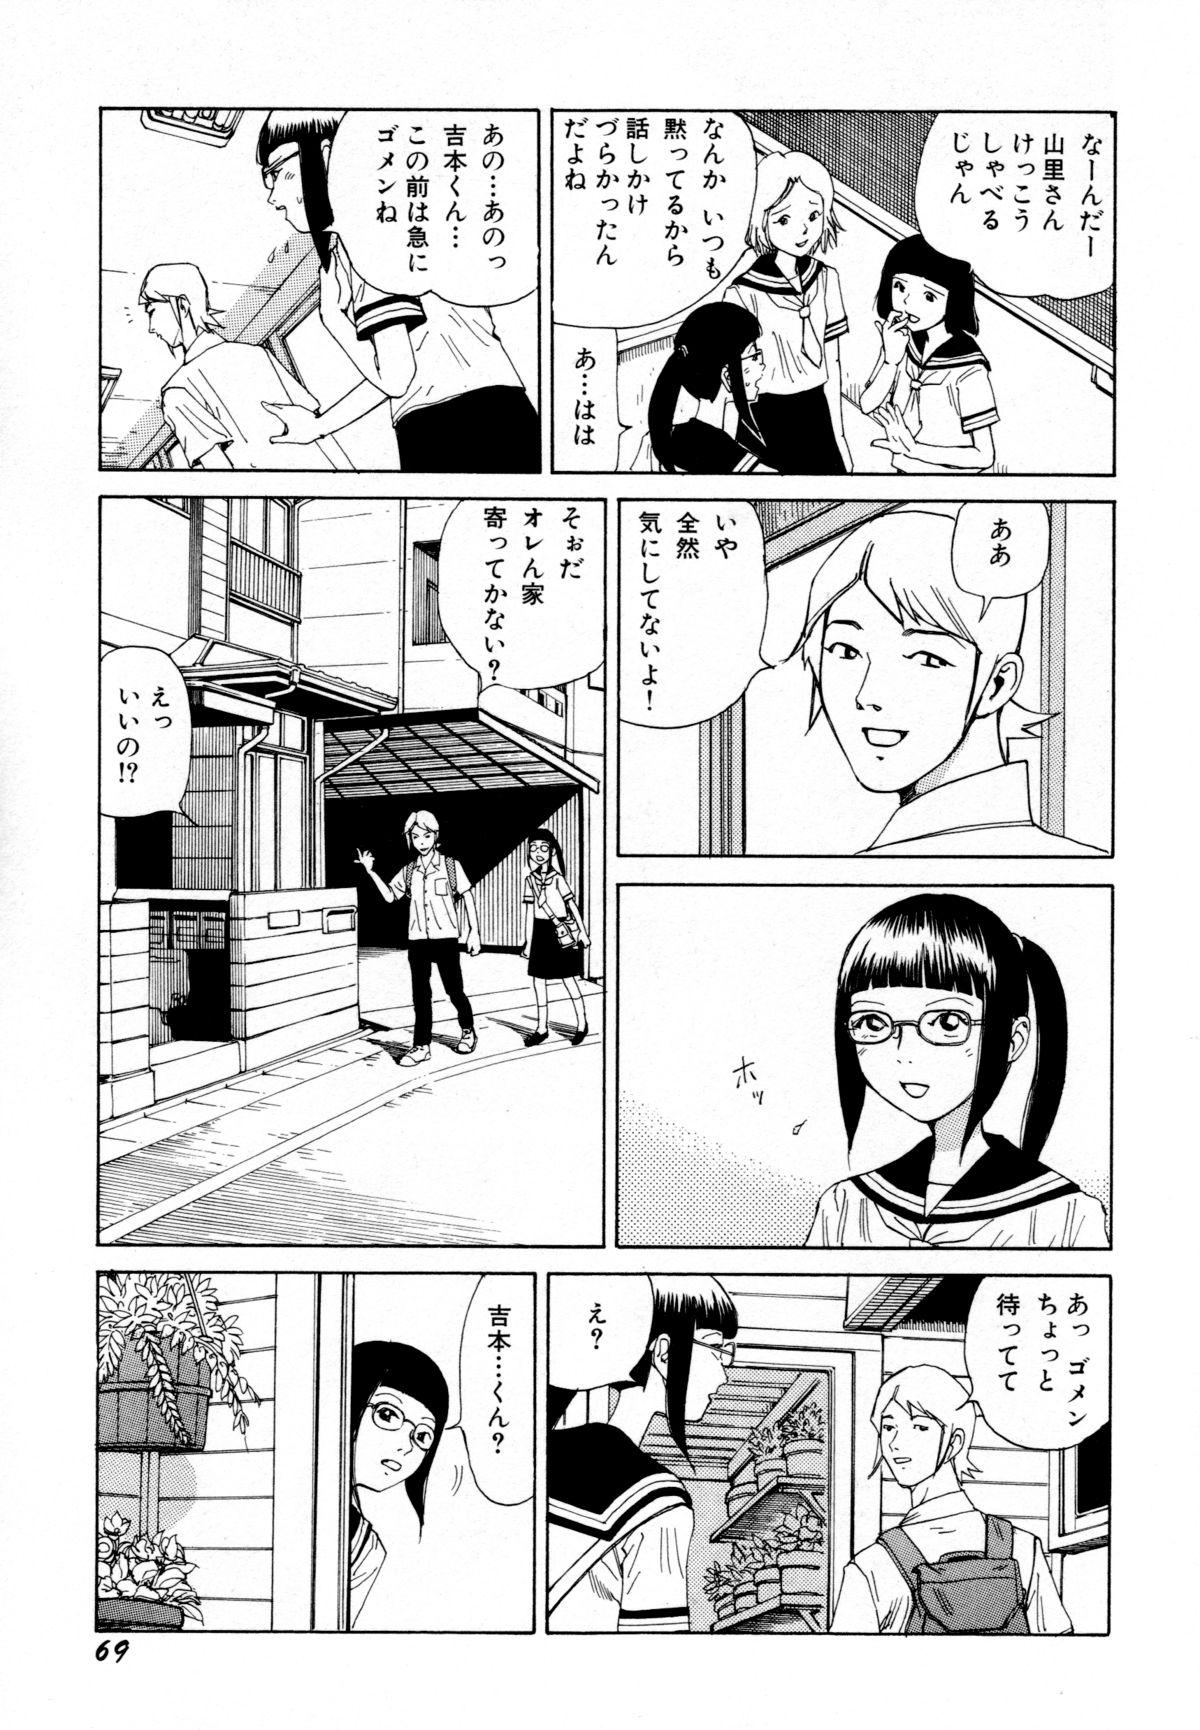 Arijigoku vs Barabara Shoujo - Antlion vs BaraBara Girl 70